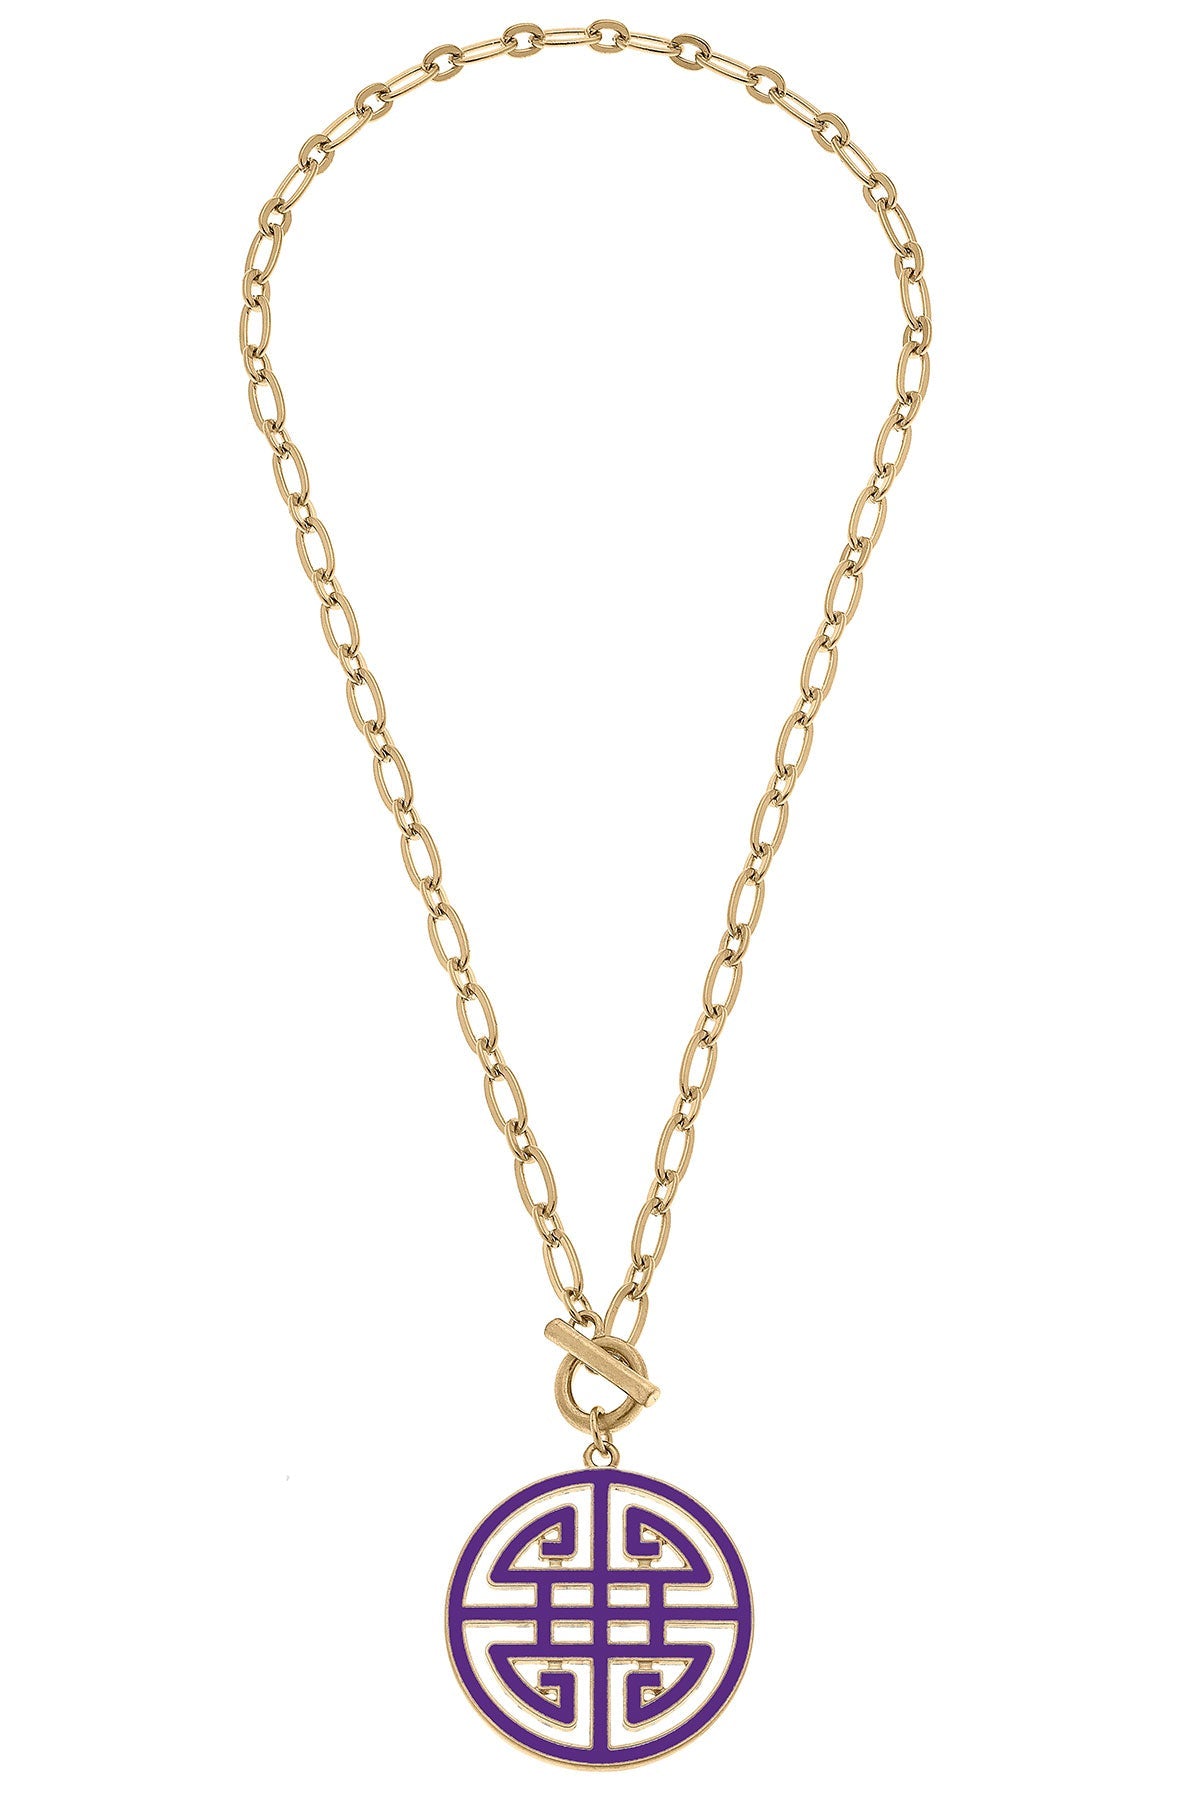 Tara Game Day Greek Keys Enamel Pendant Necklace in Purple by CANVAS